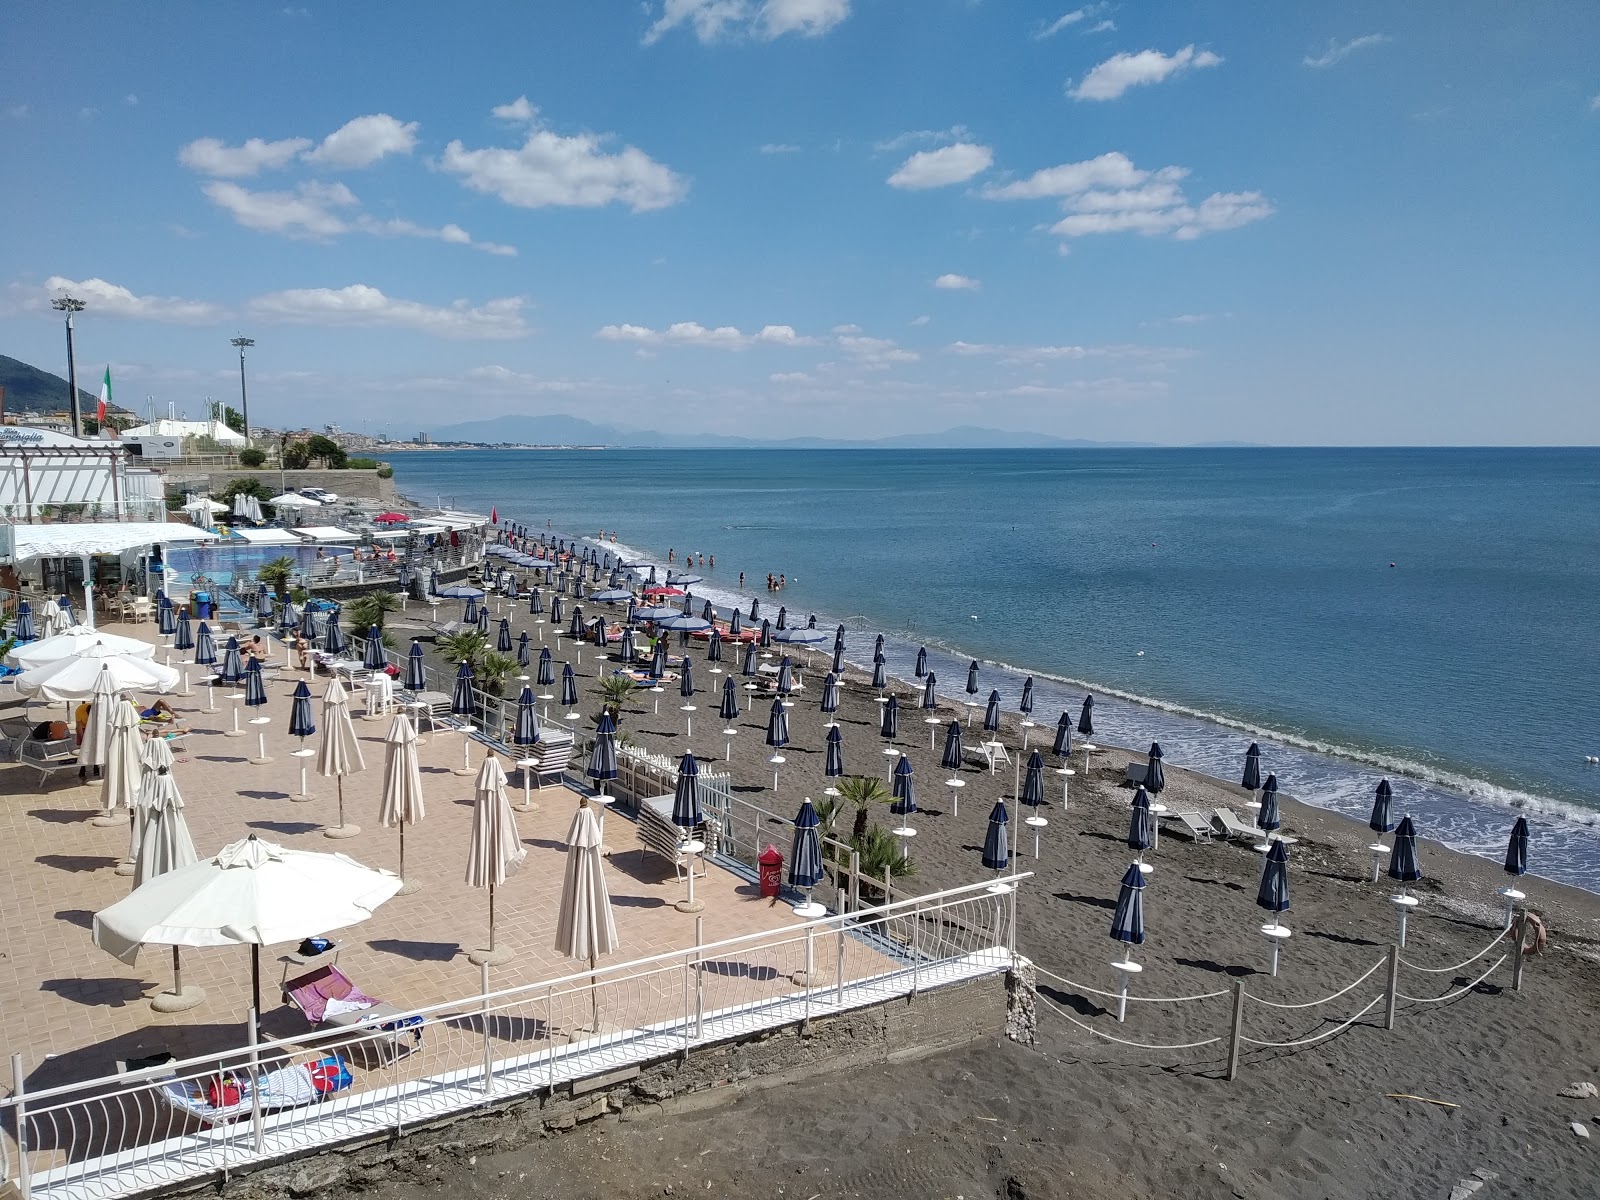 Salerno beach IV'in fotoğrafı mavi sular yüzey ile